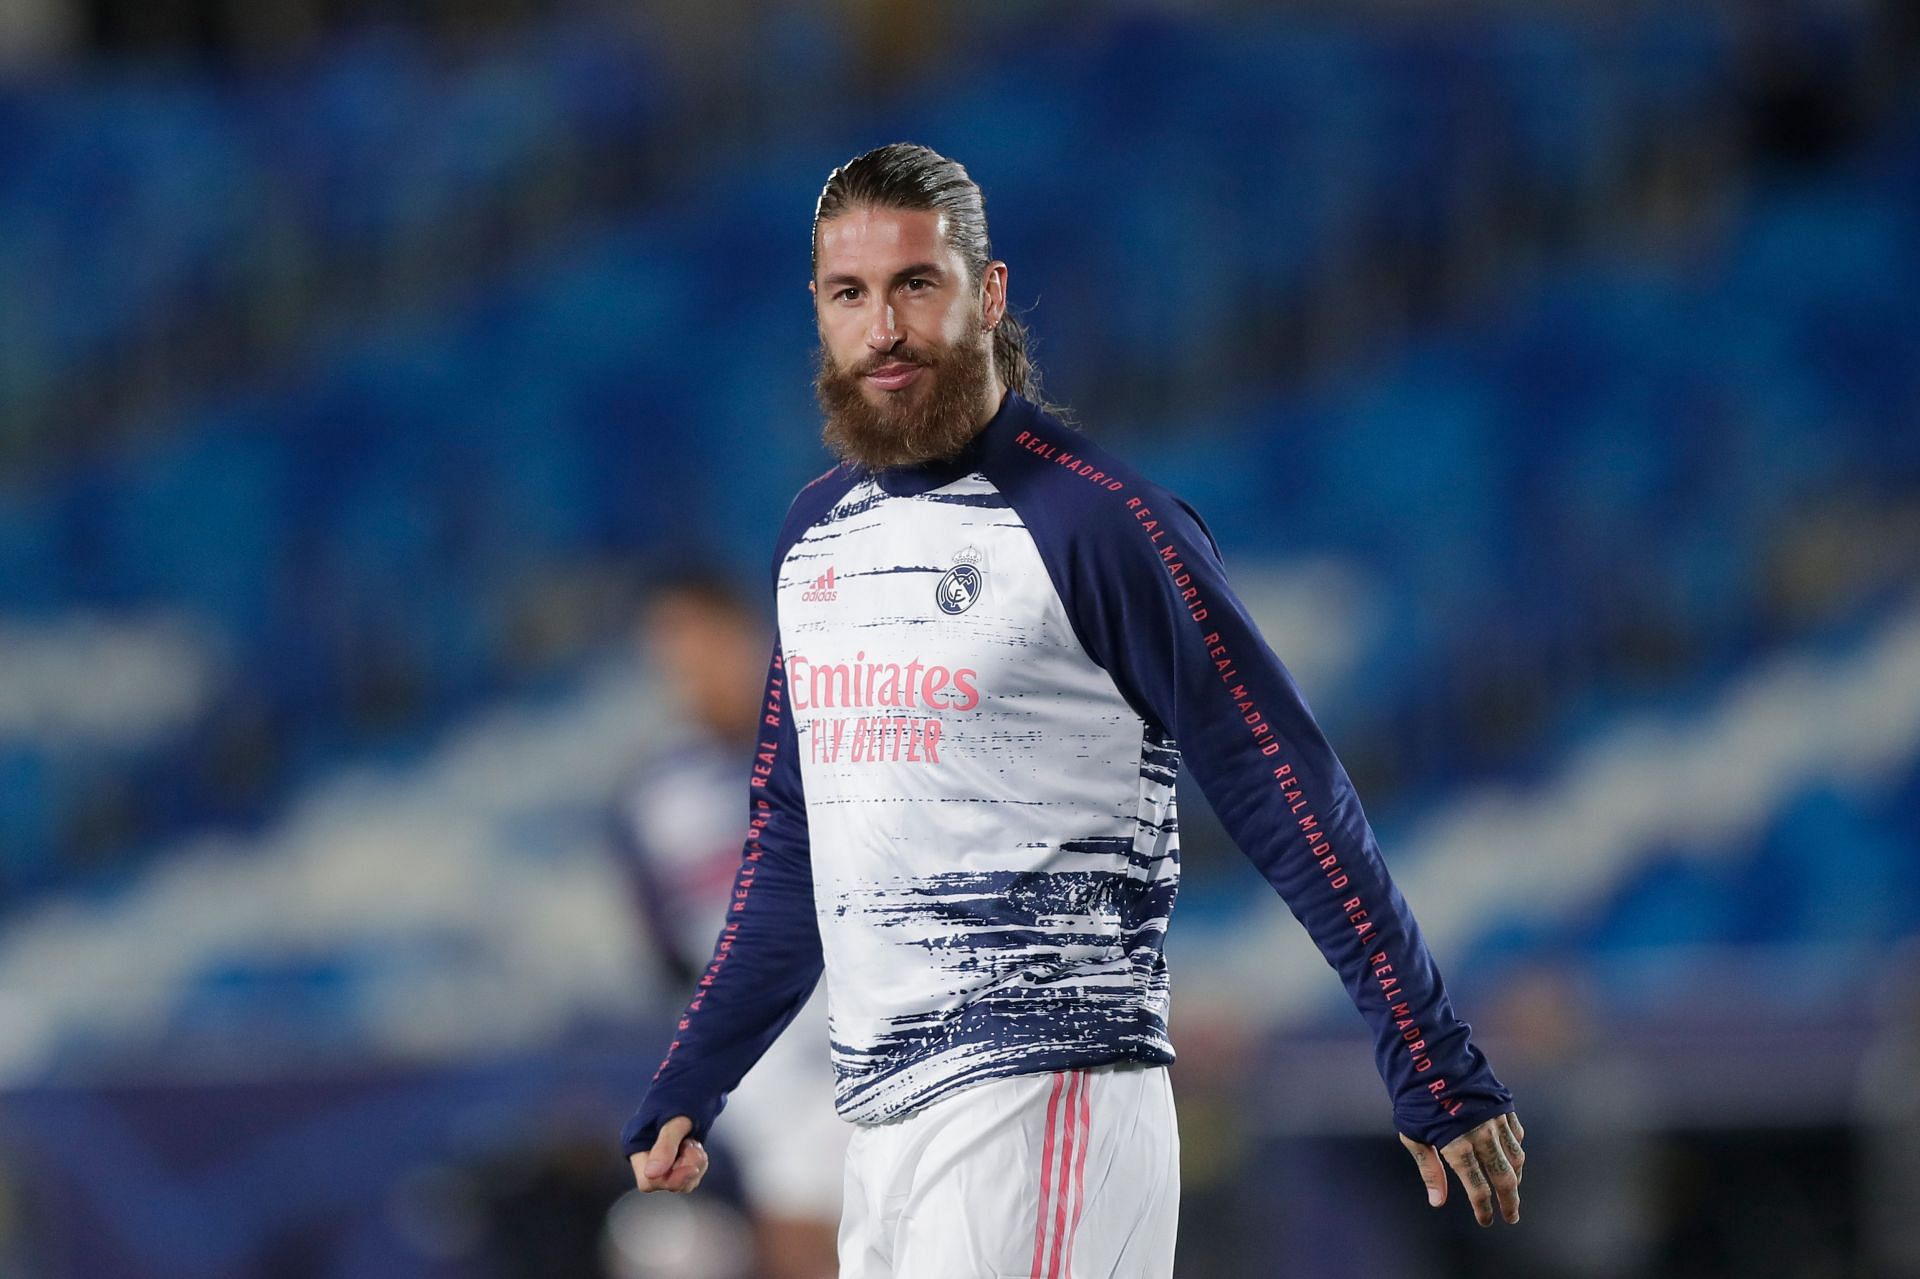 Sergio Ramos has endured a difficult time in Paris so far